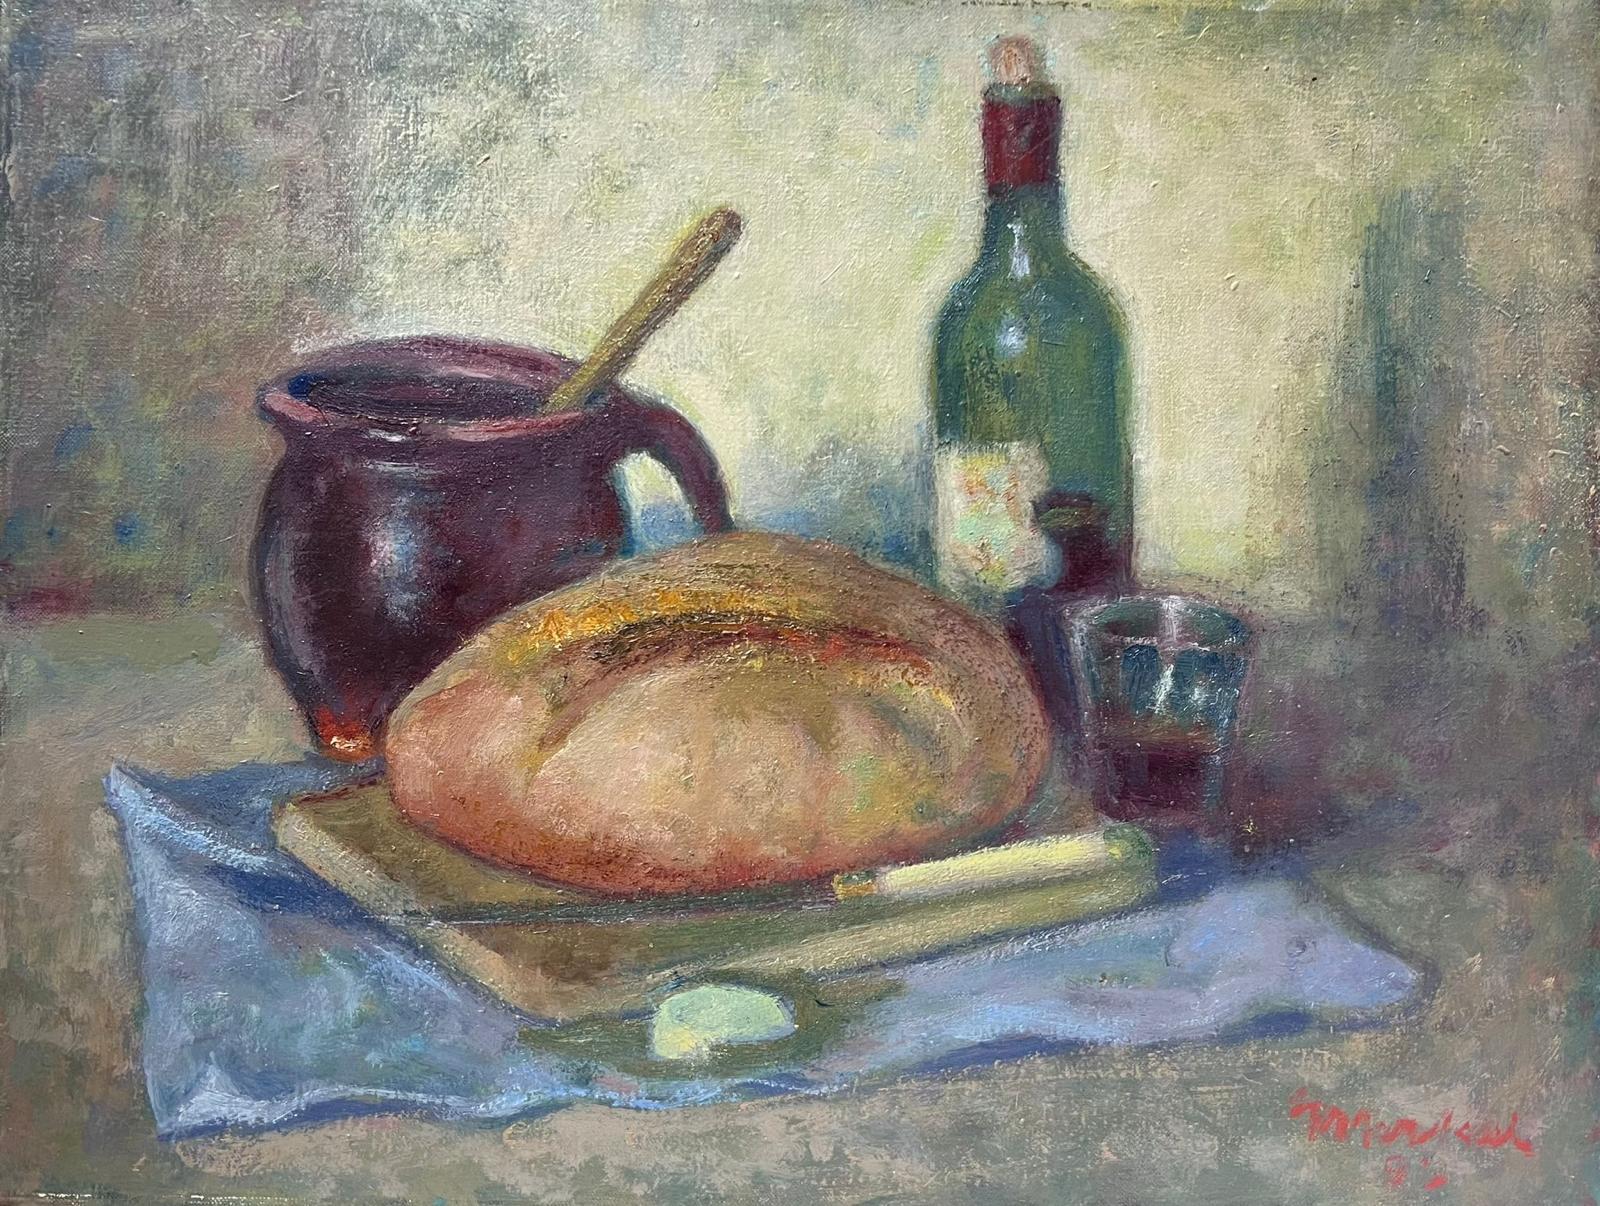 Jacob Markiel Interior Painting - Still Life Bread & Wine on Table Top 20th Century Impressionist Oil Polish art